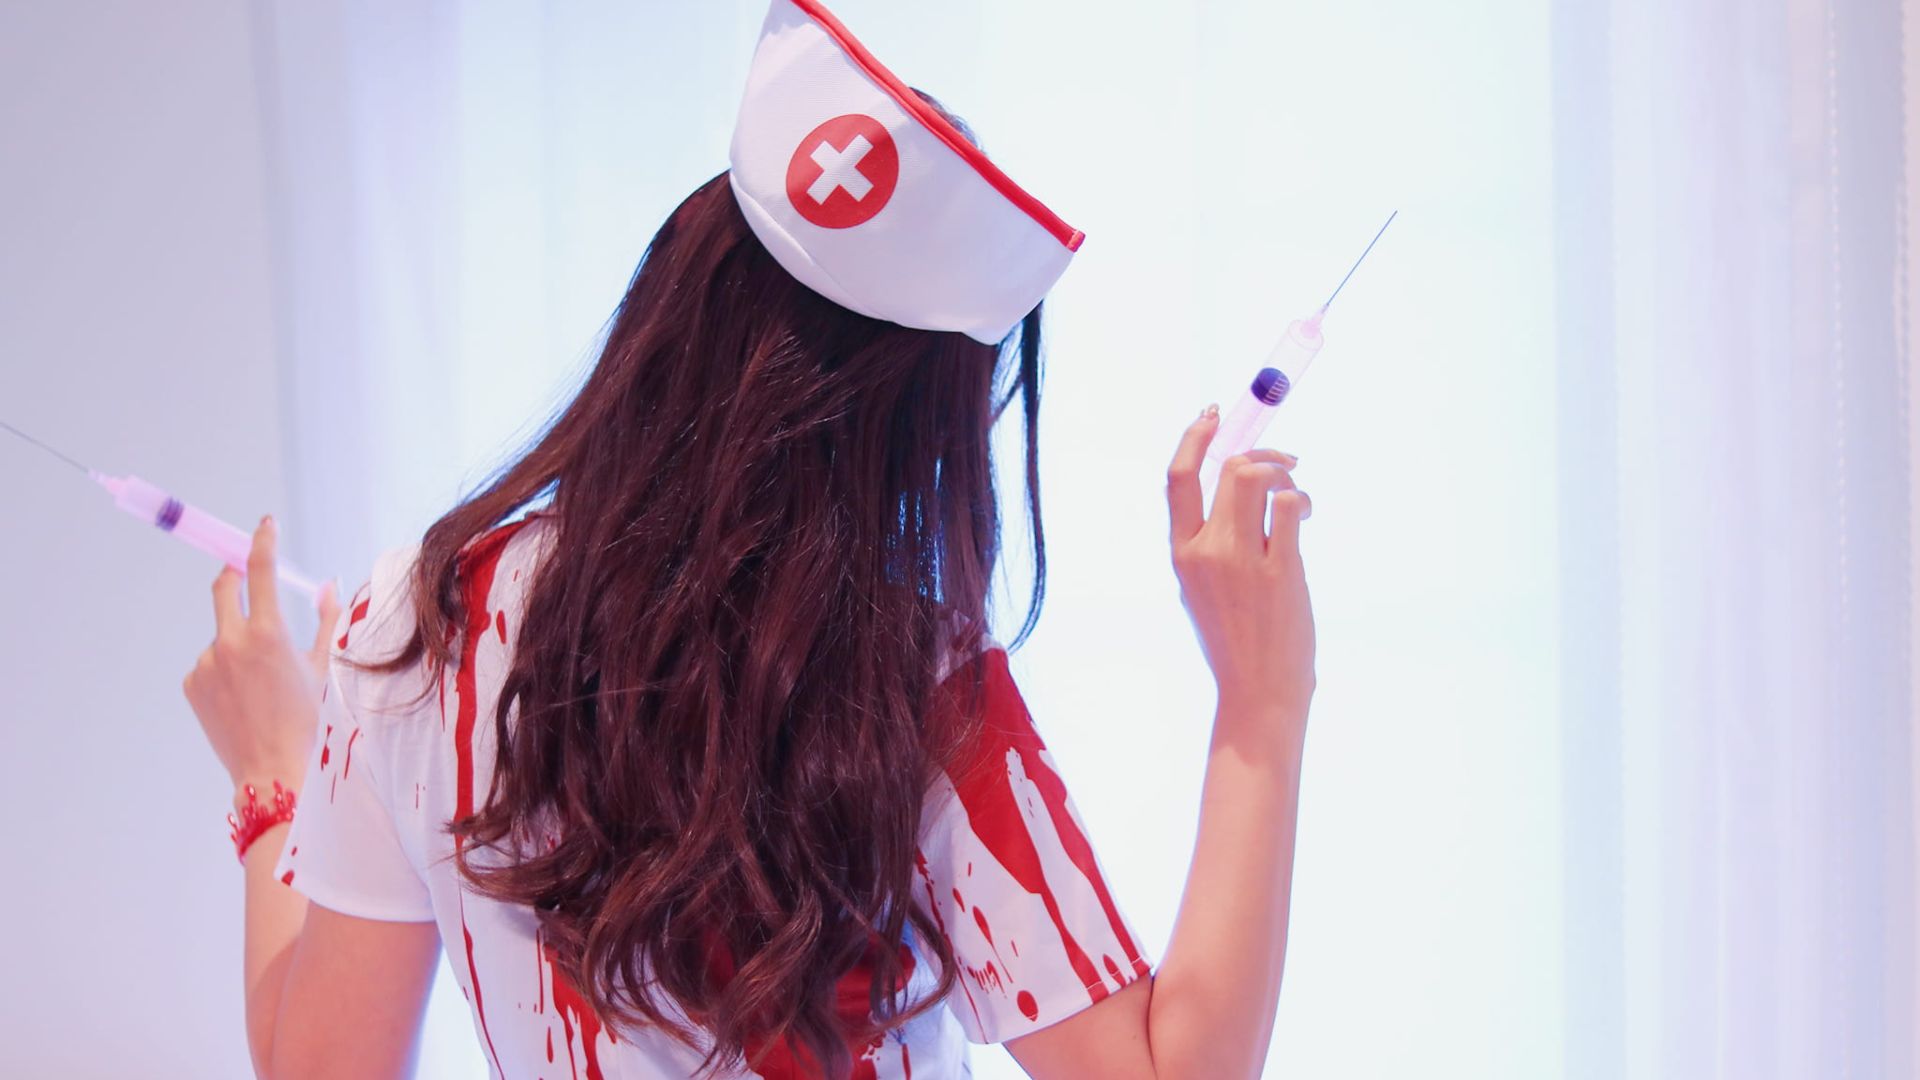 El sindicato de enfermería pide al comercio no vender disfraces de enfermera sexi por Halloween